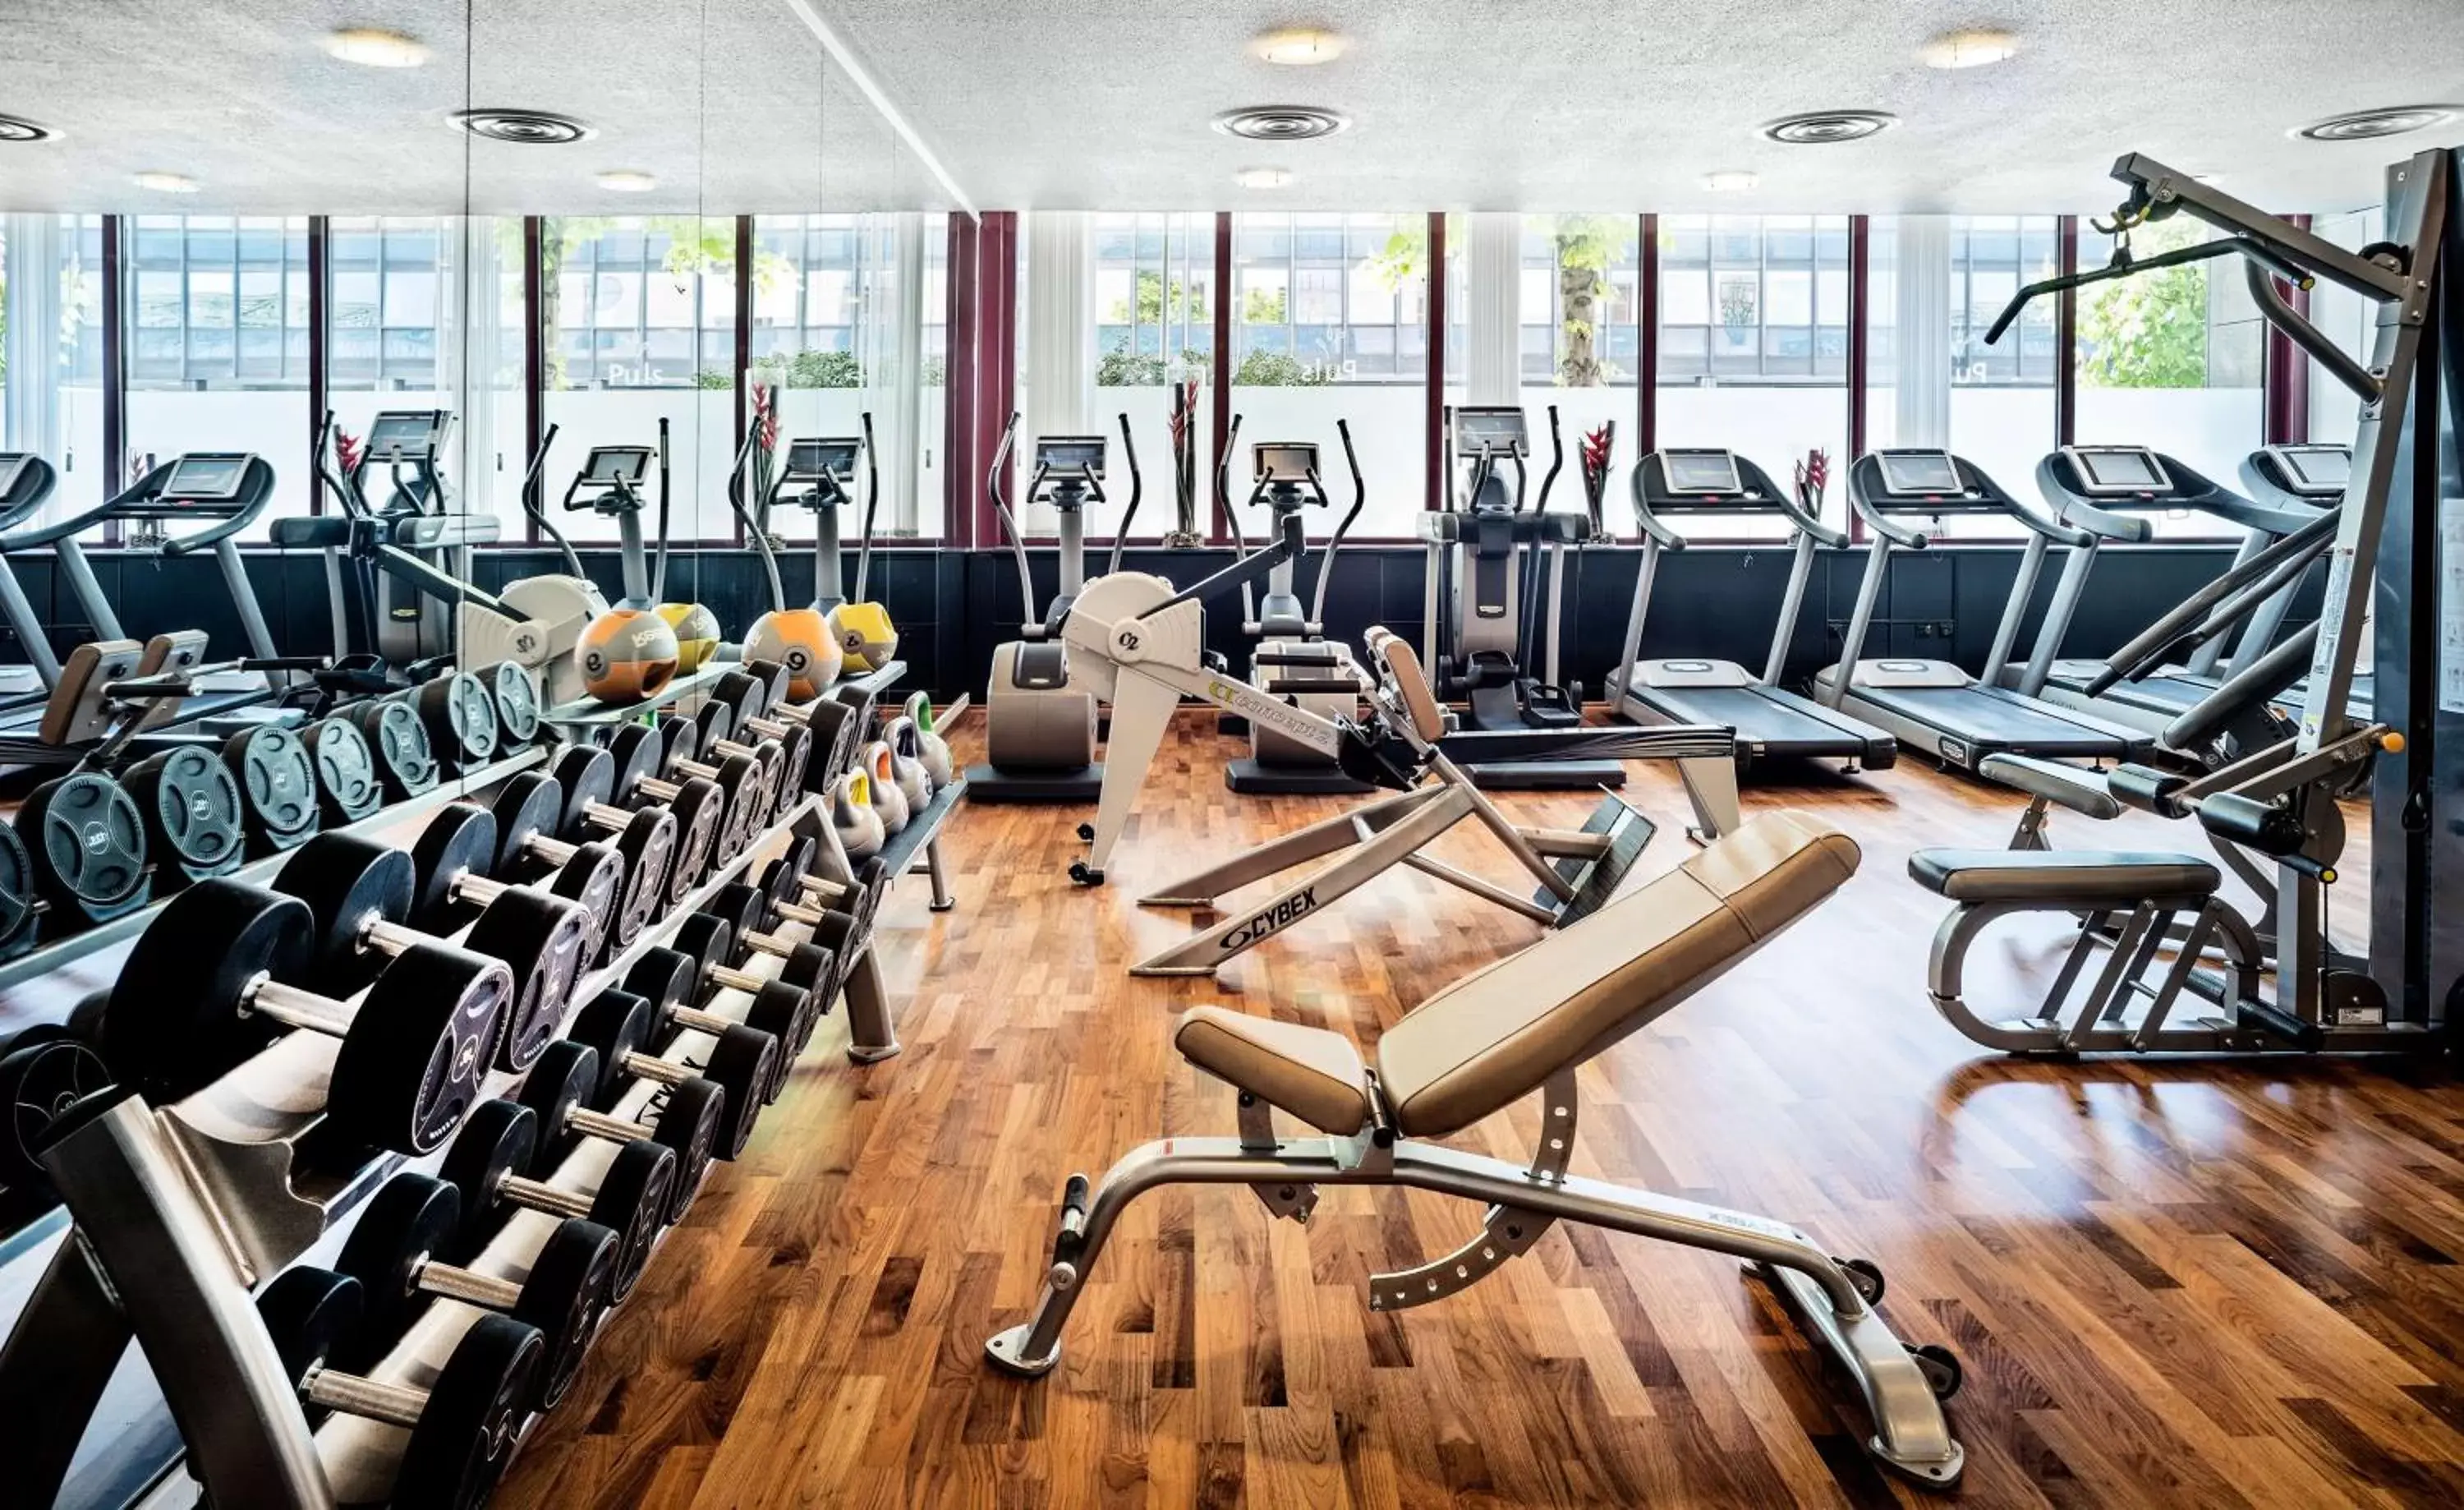 Fitness centre/facilities, Fitness Center/Facilities in Hyatt Regency Köln